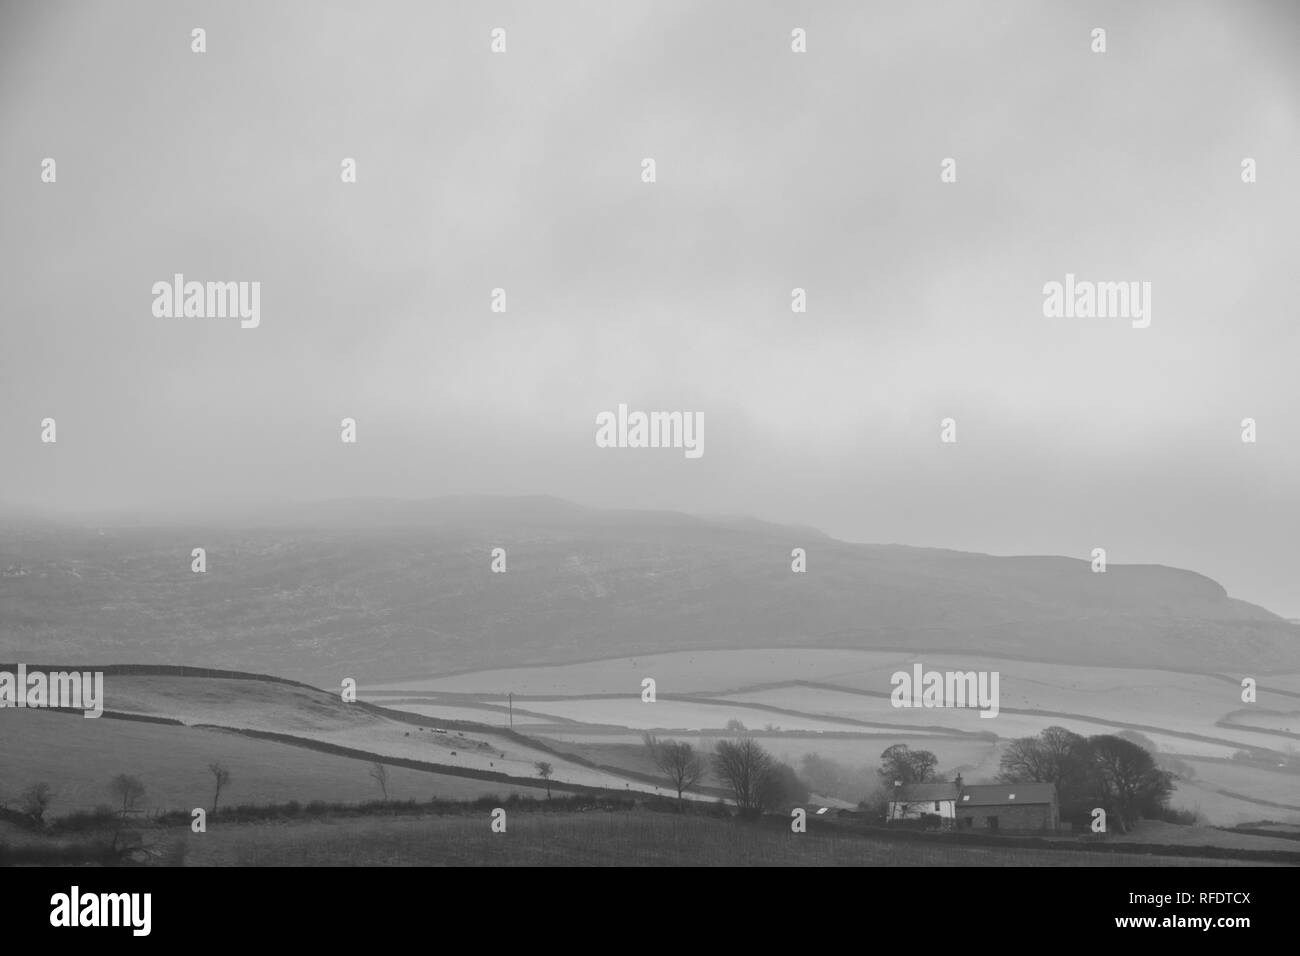 Maison du Maure sur Kirkby Moor, Cumbria (Royaume-Uni) par une froide et humide journée d'hiver. Fujifilm X-T3, Fujinon 18-55mm f2.8-4.0 @ 55mm, f =7.1, 1/50ème seconde, ISO400 Banque D'Images